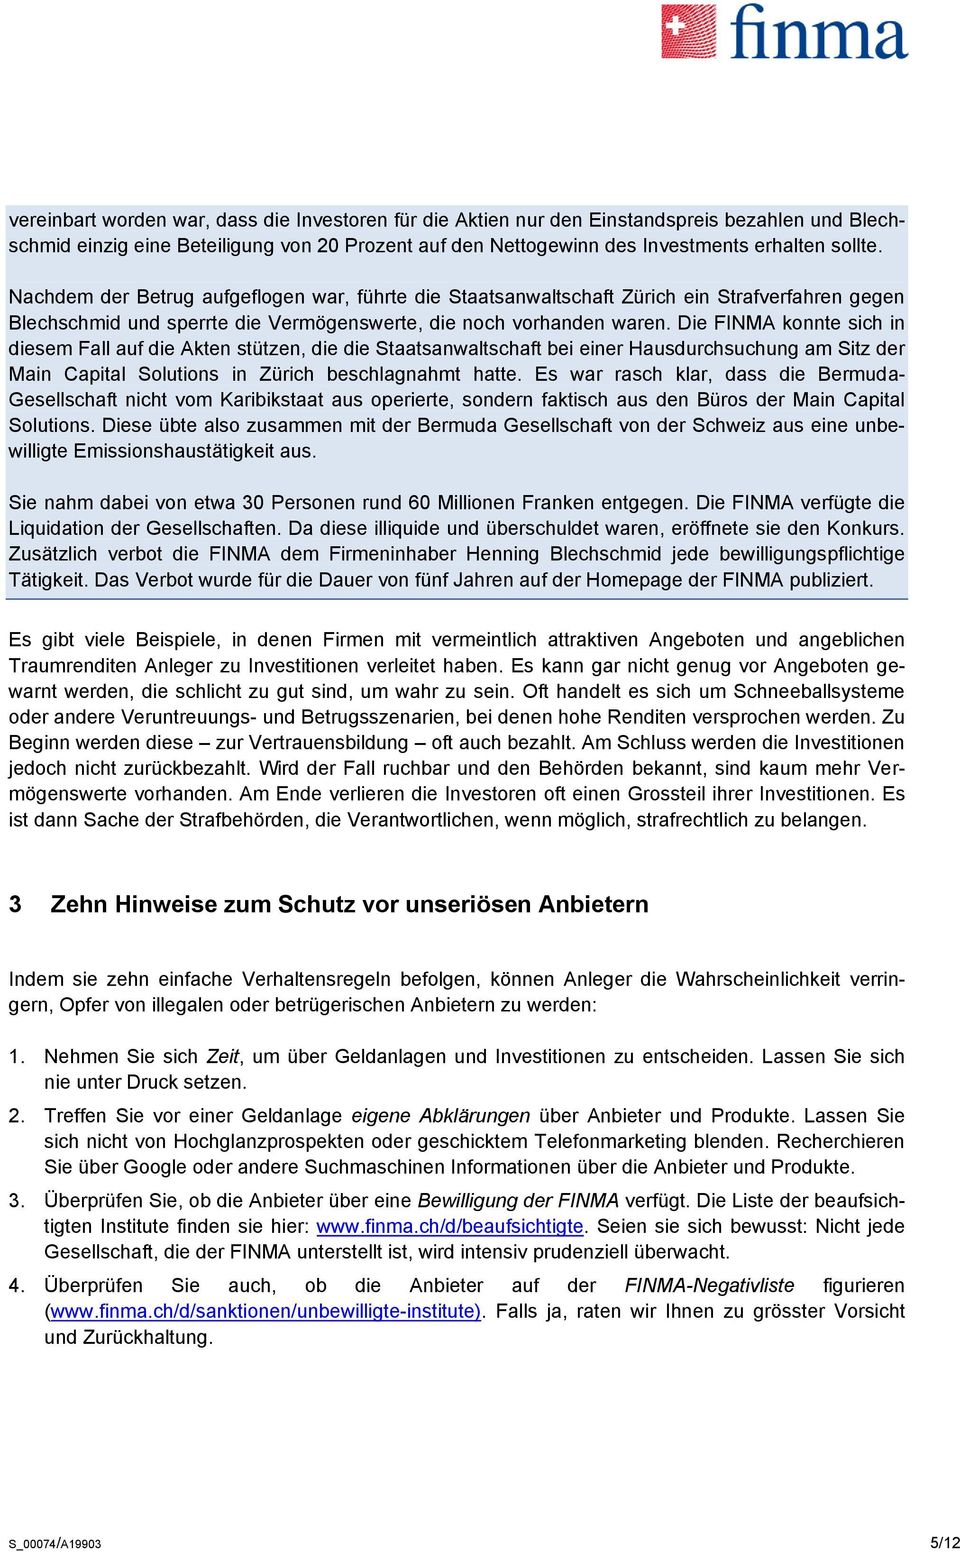 Die FINMA konnte sich in diesem Fall auf die Akten stützen, die die Staatsanwaltschaft bei einer Hausdurchsuchung am Sitz der Main Capital Solutions in Zürich beschlagnahmt hatte.